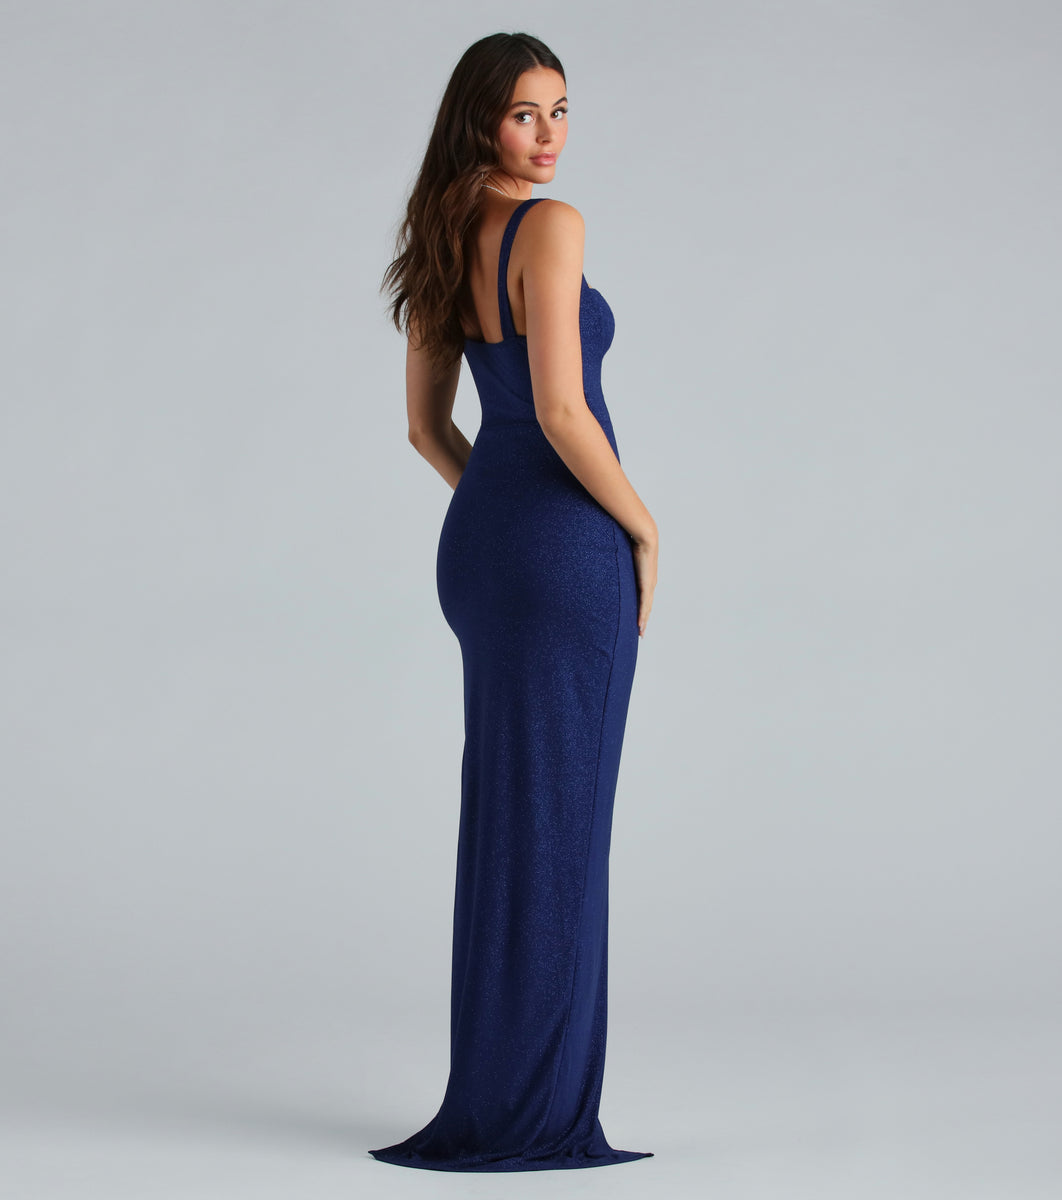 Windsor Keira Glitter Knit High Slit Formal Dress | CoolSprings 